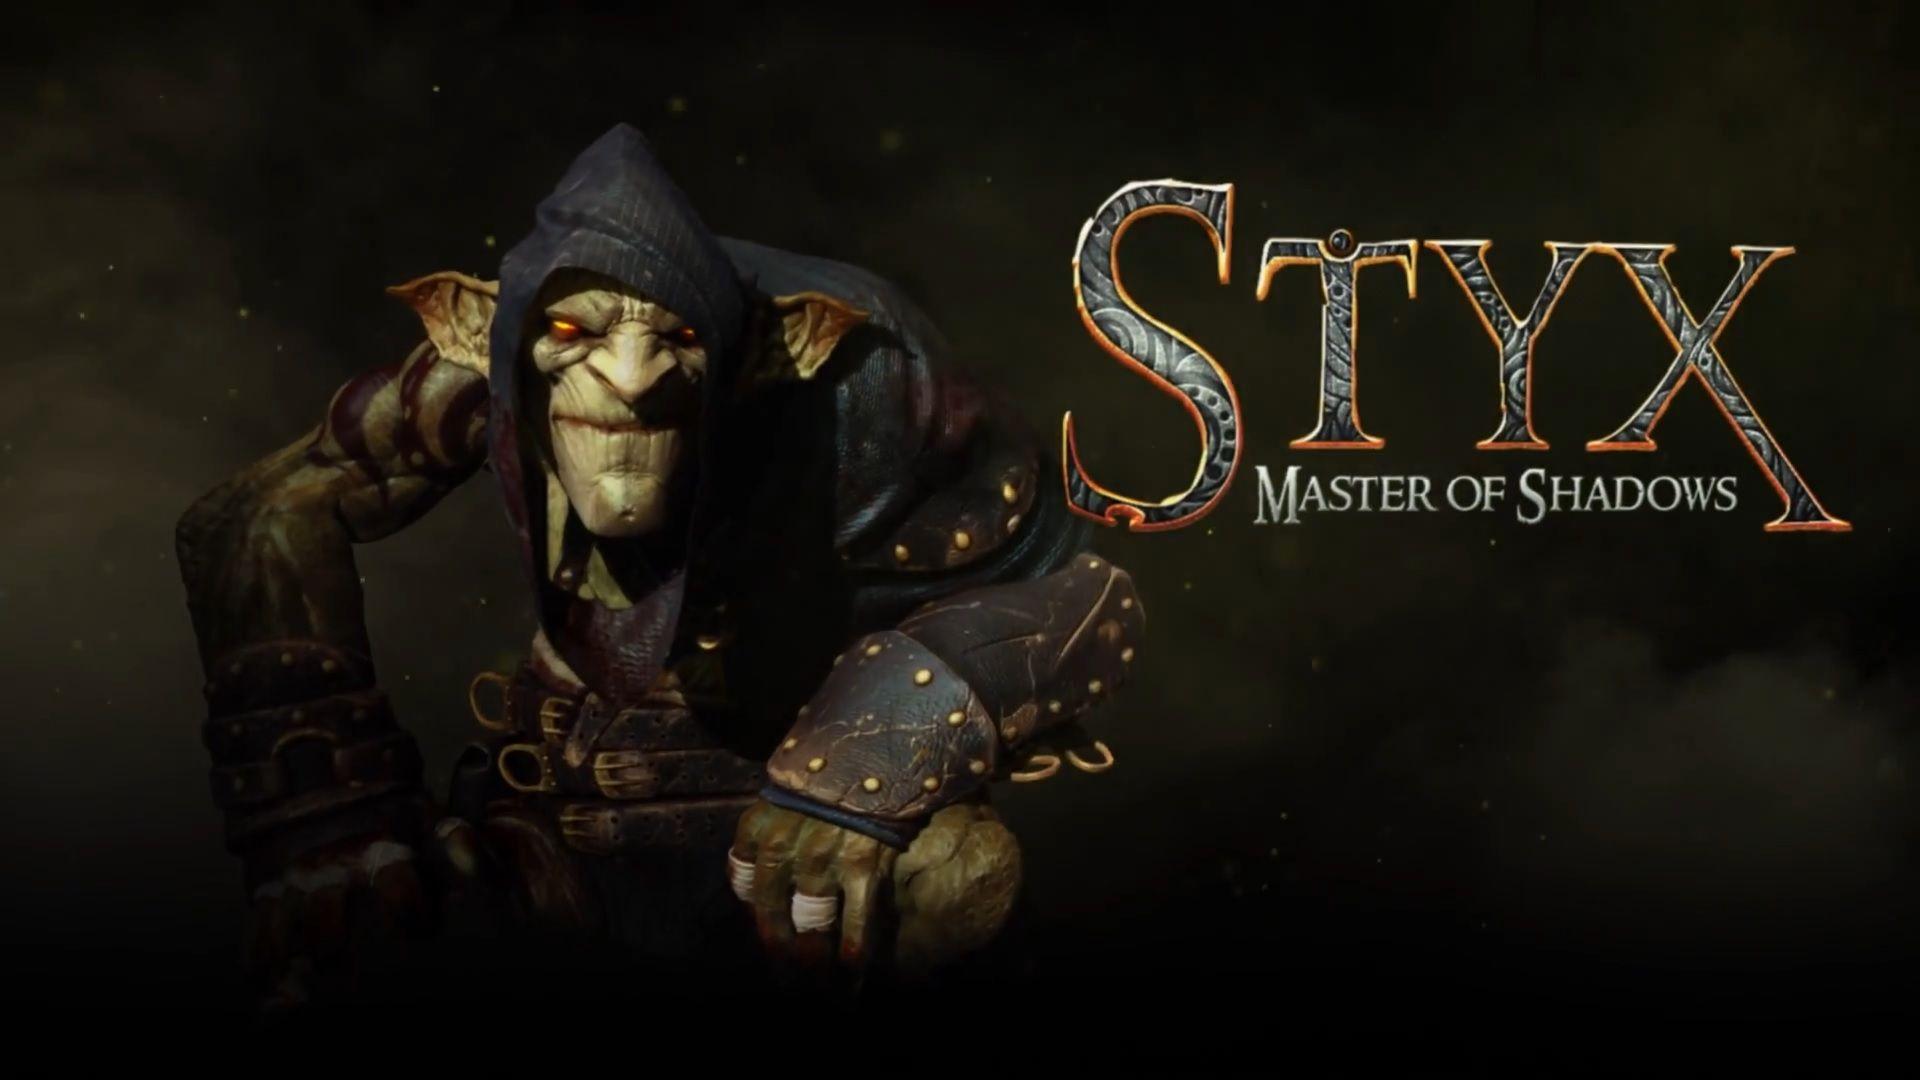 Wallpaper Wallpaper from Styx: Master of Shadows